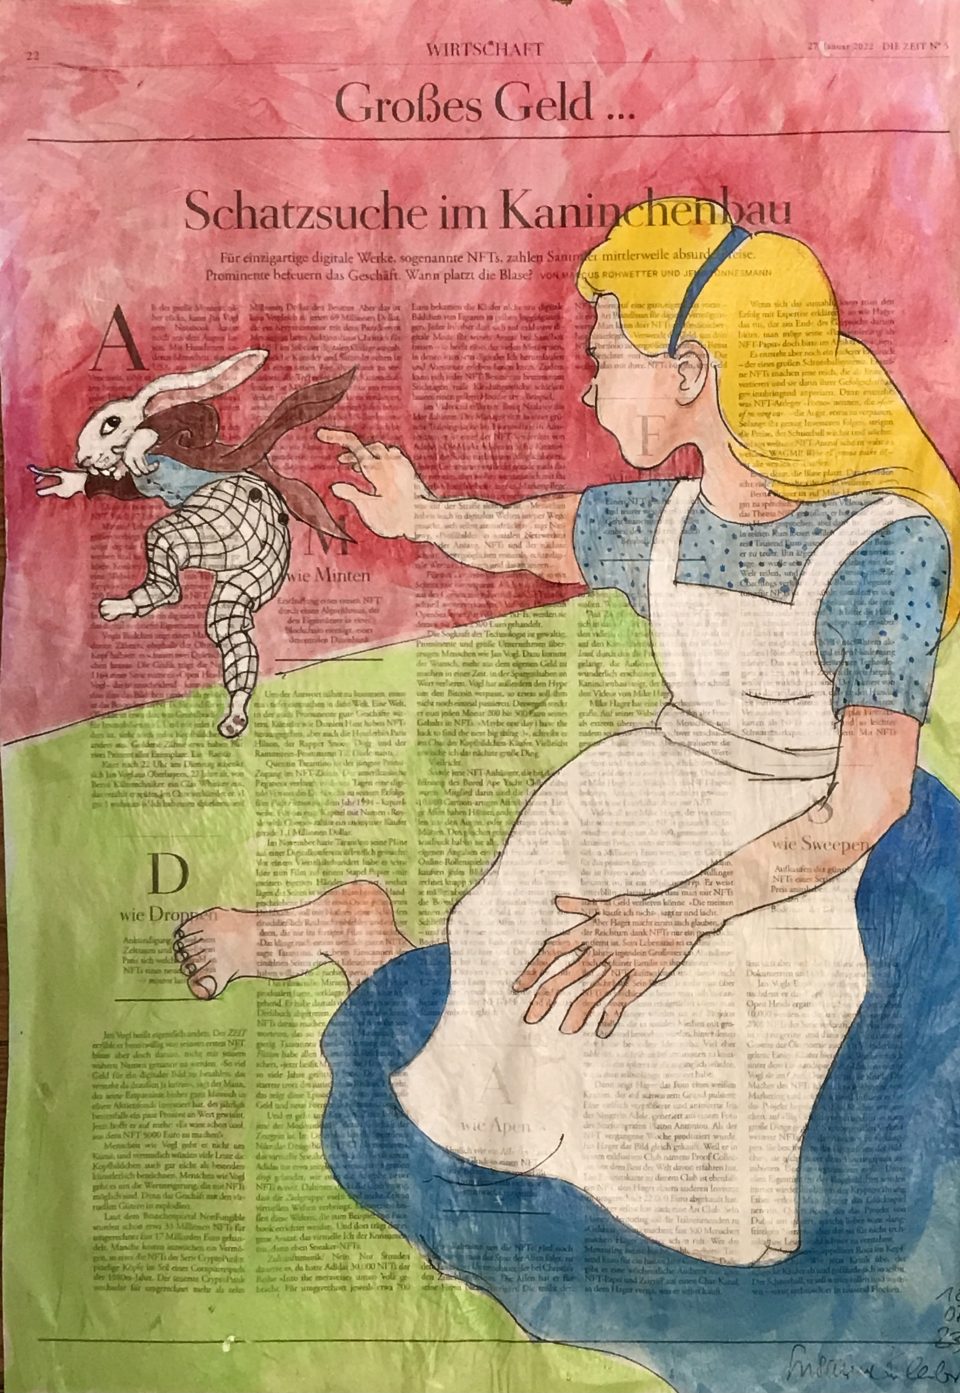 Schatzsuche im Kaninchenbau – Alice vorne groß mit blauer Bekleidung und Schürze, hinten fliehender Hase, auf ganzer Zeitungsseite 56 x 40 cm mit Überschrift "Schautzsuche im Kaninchenbau"